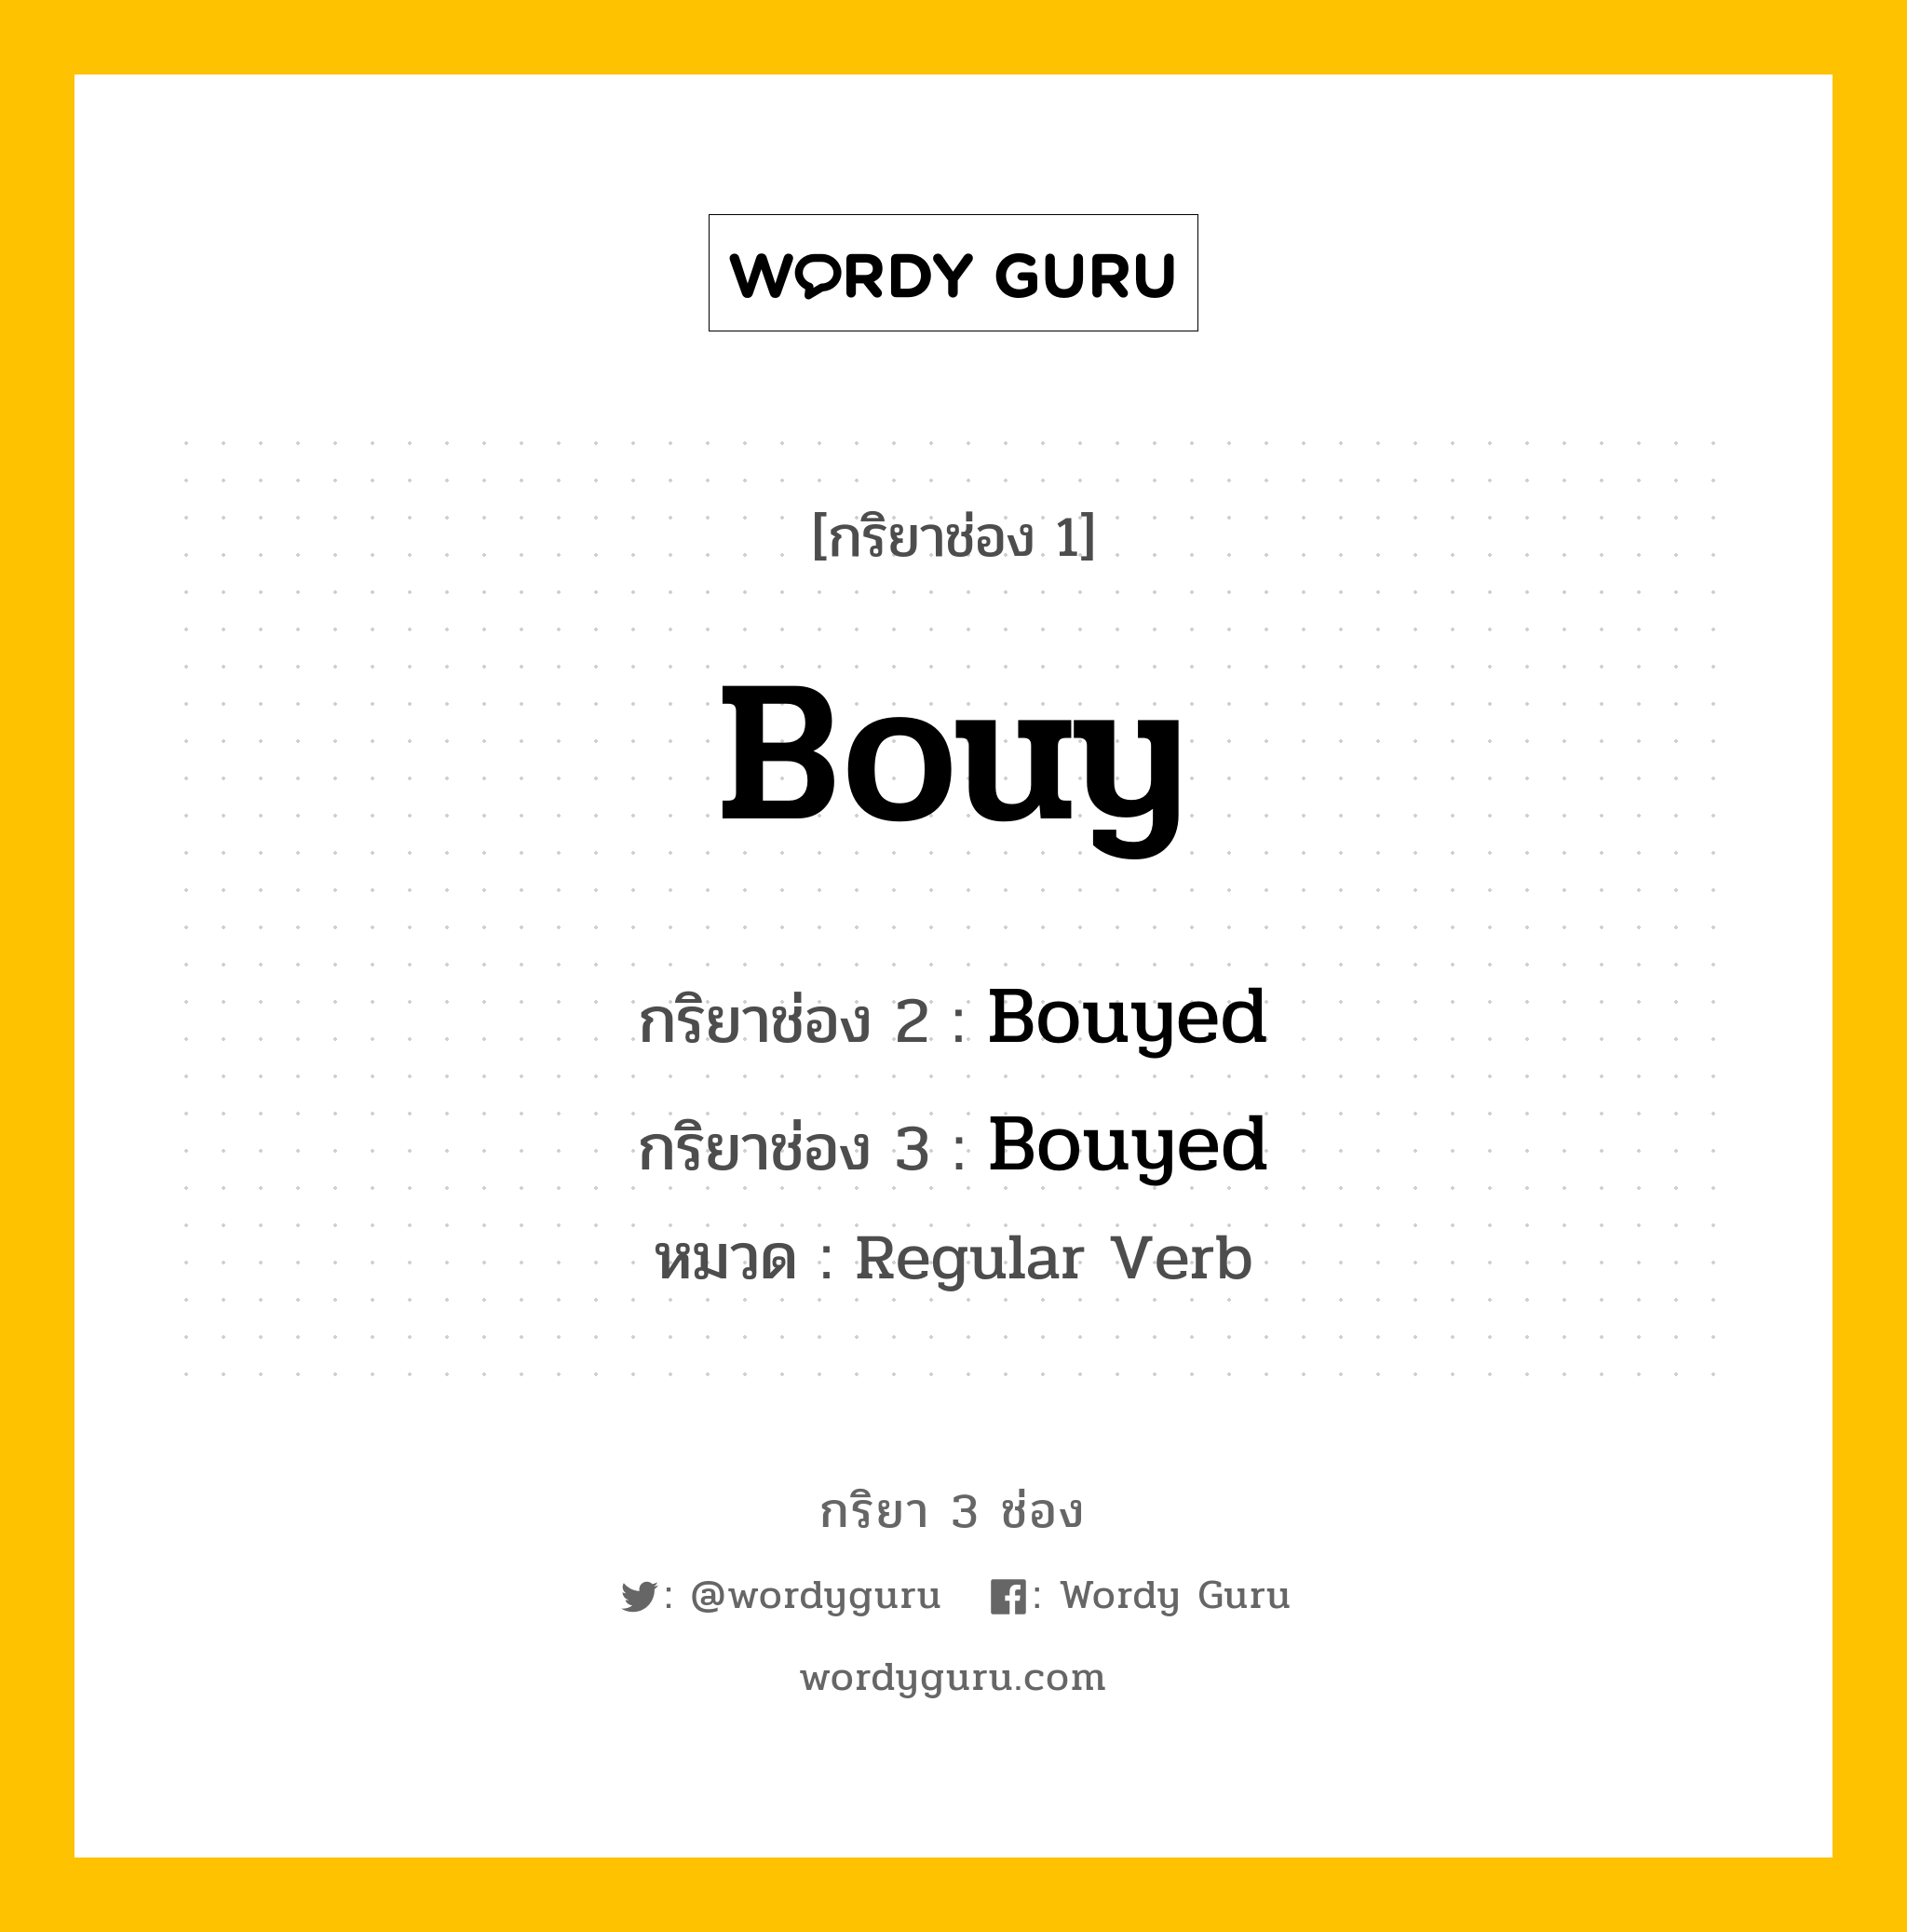 กริยา 3 ช่อง: Bouy ช่อง 2 Bouy ช่อง 3 คืออะไร, กริยาช่อง 1 Bouy กริยาช่อง 2 Bouyed กริยาช่อง 3 Bouyed หมวด Regular Verb หมวด Regular Verb